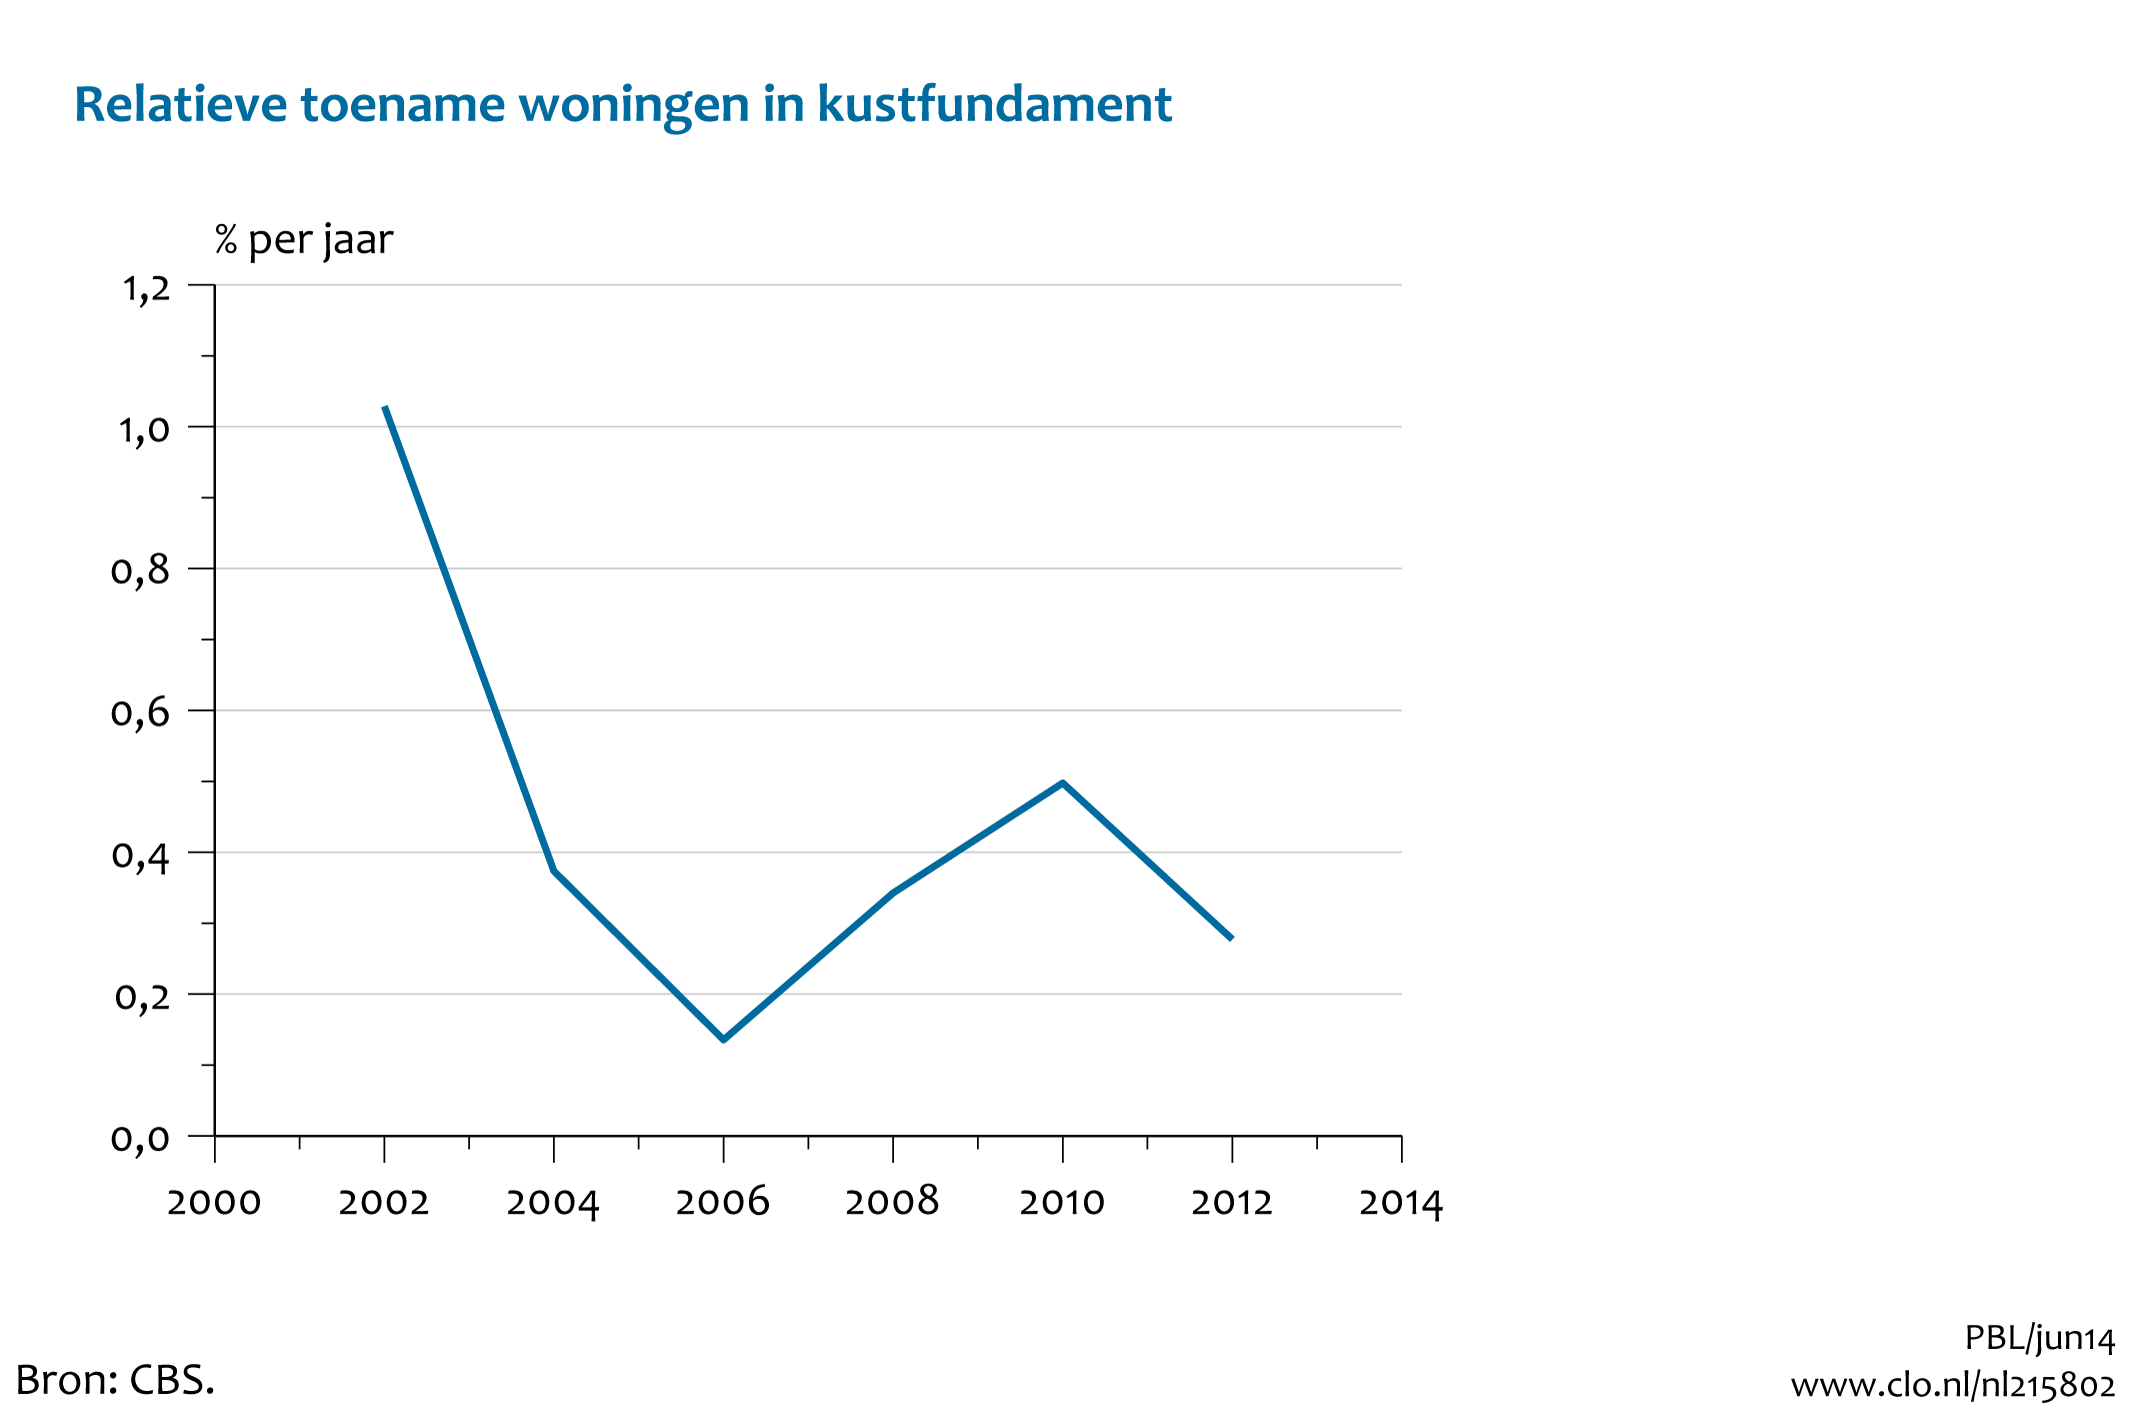 Figuur Relatieve toename woningen in het kustfundament, 2000-2012. In de rest van de tekst wordt deze figuur uitgebreider uitgelegd.